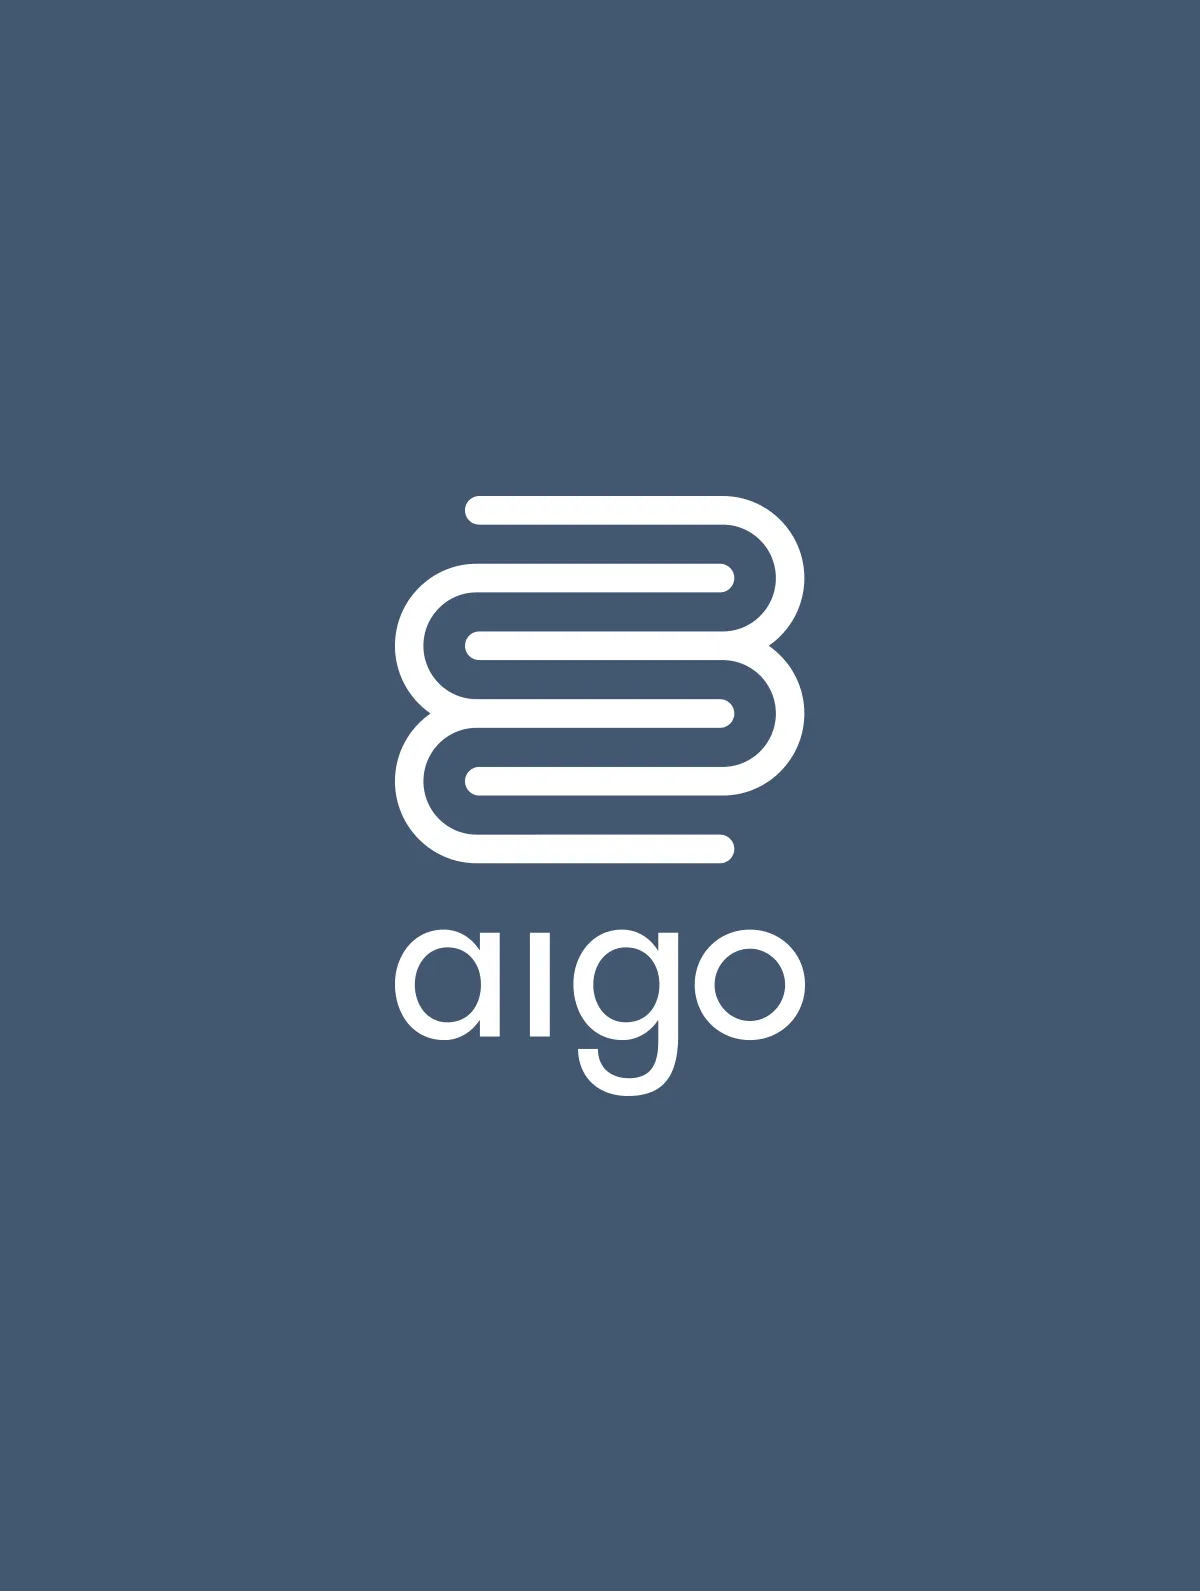 Aigo - Nuovo look per un affermata istituzione sanitaria. - By HDG